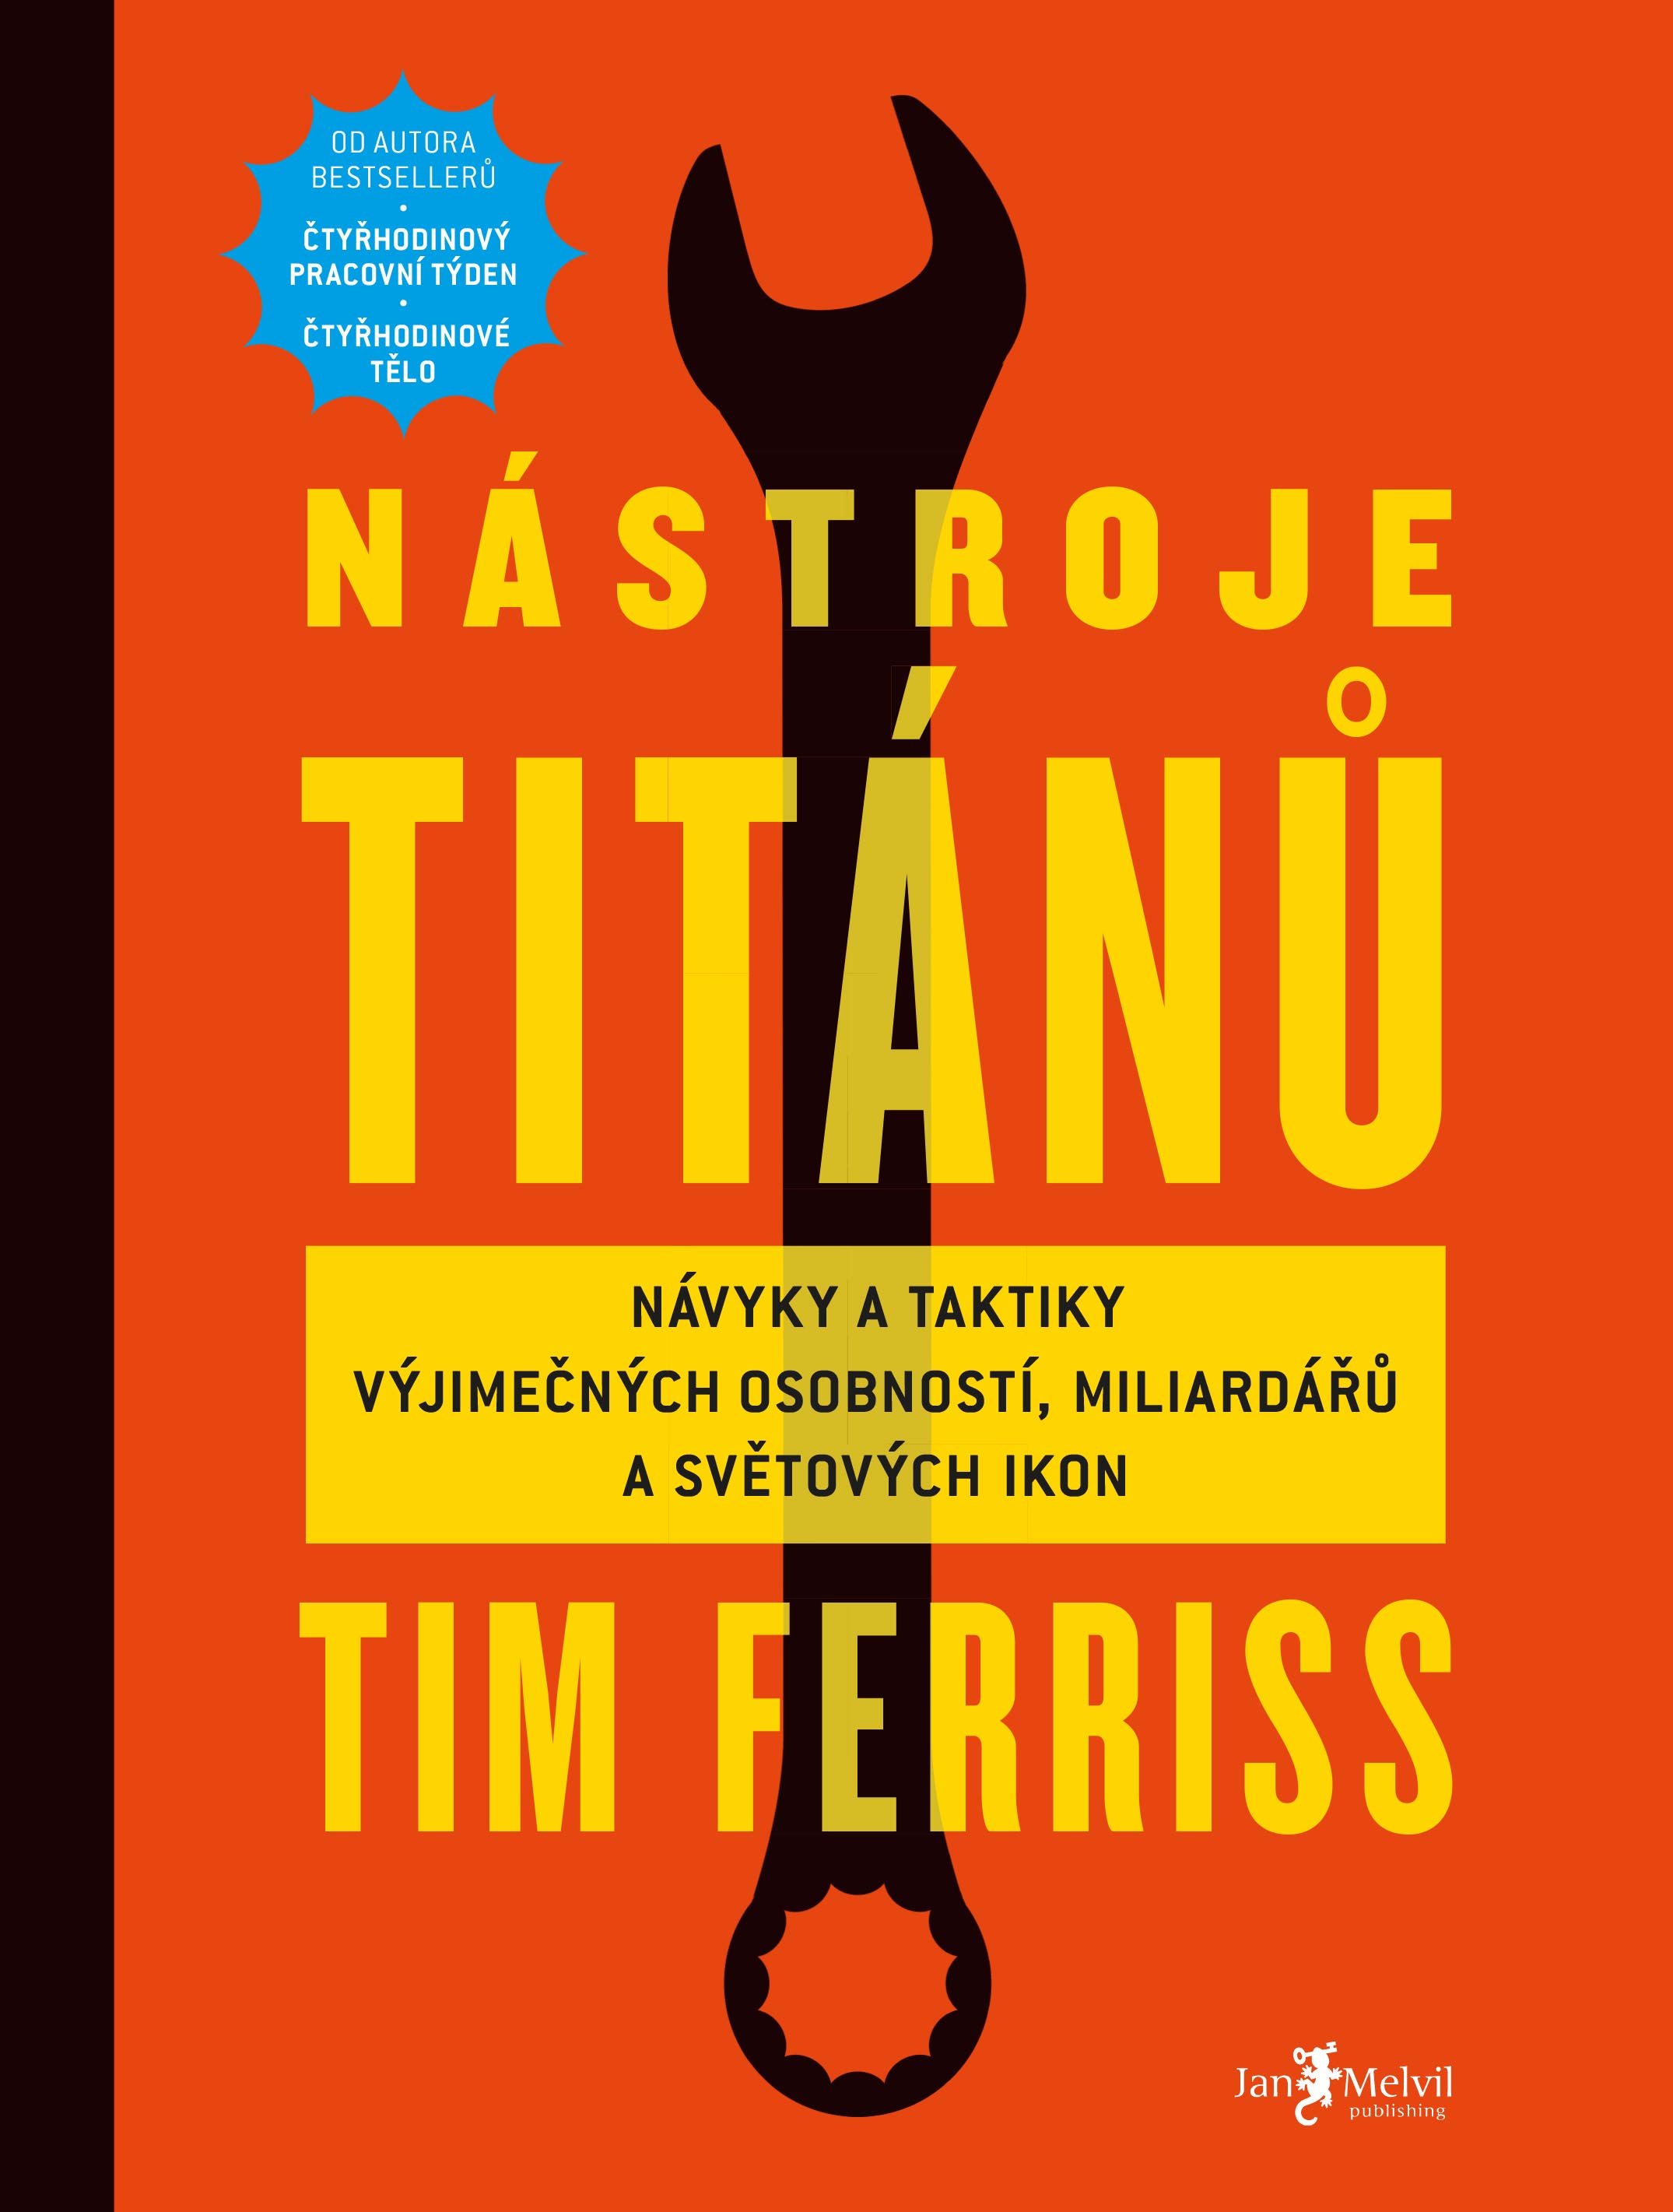 Timothy Ferriss – Nástroje titánů (Návyky a taktiky výjimečných osobností, miliardářů a světových ikon)